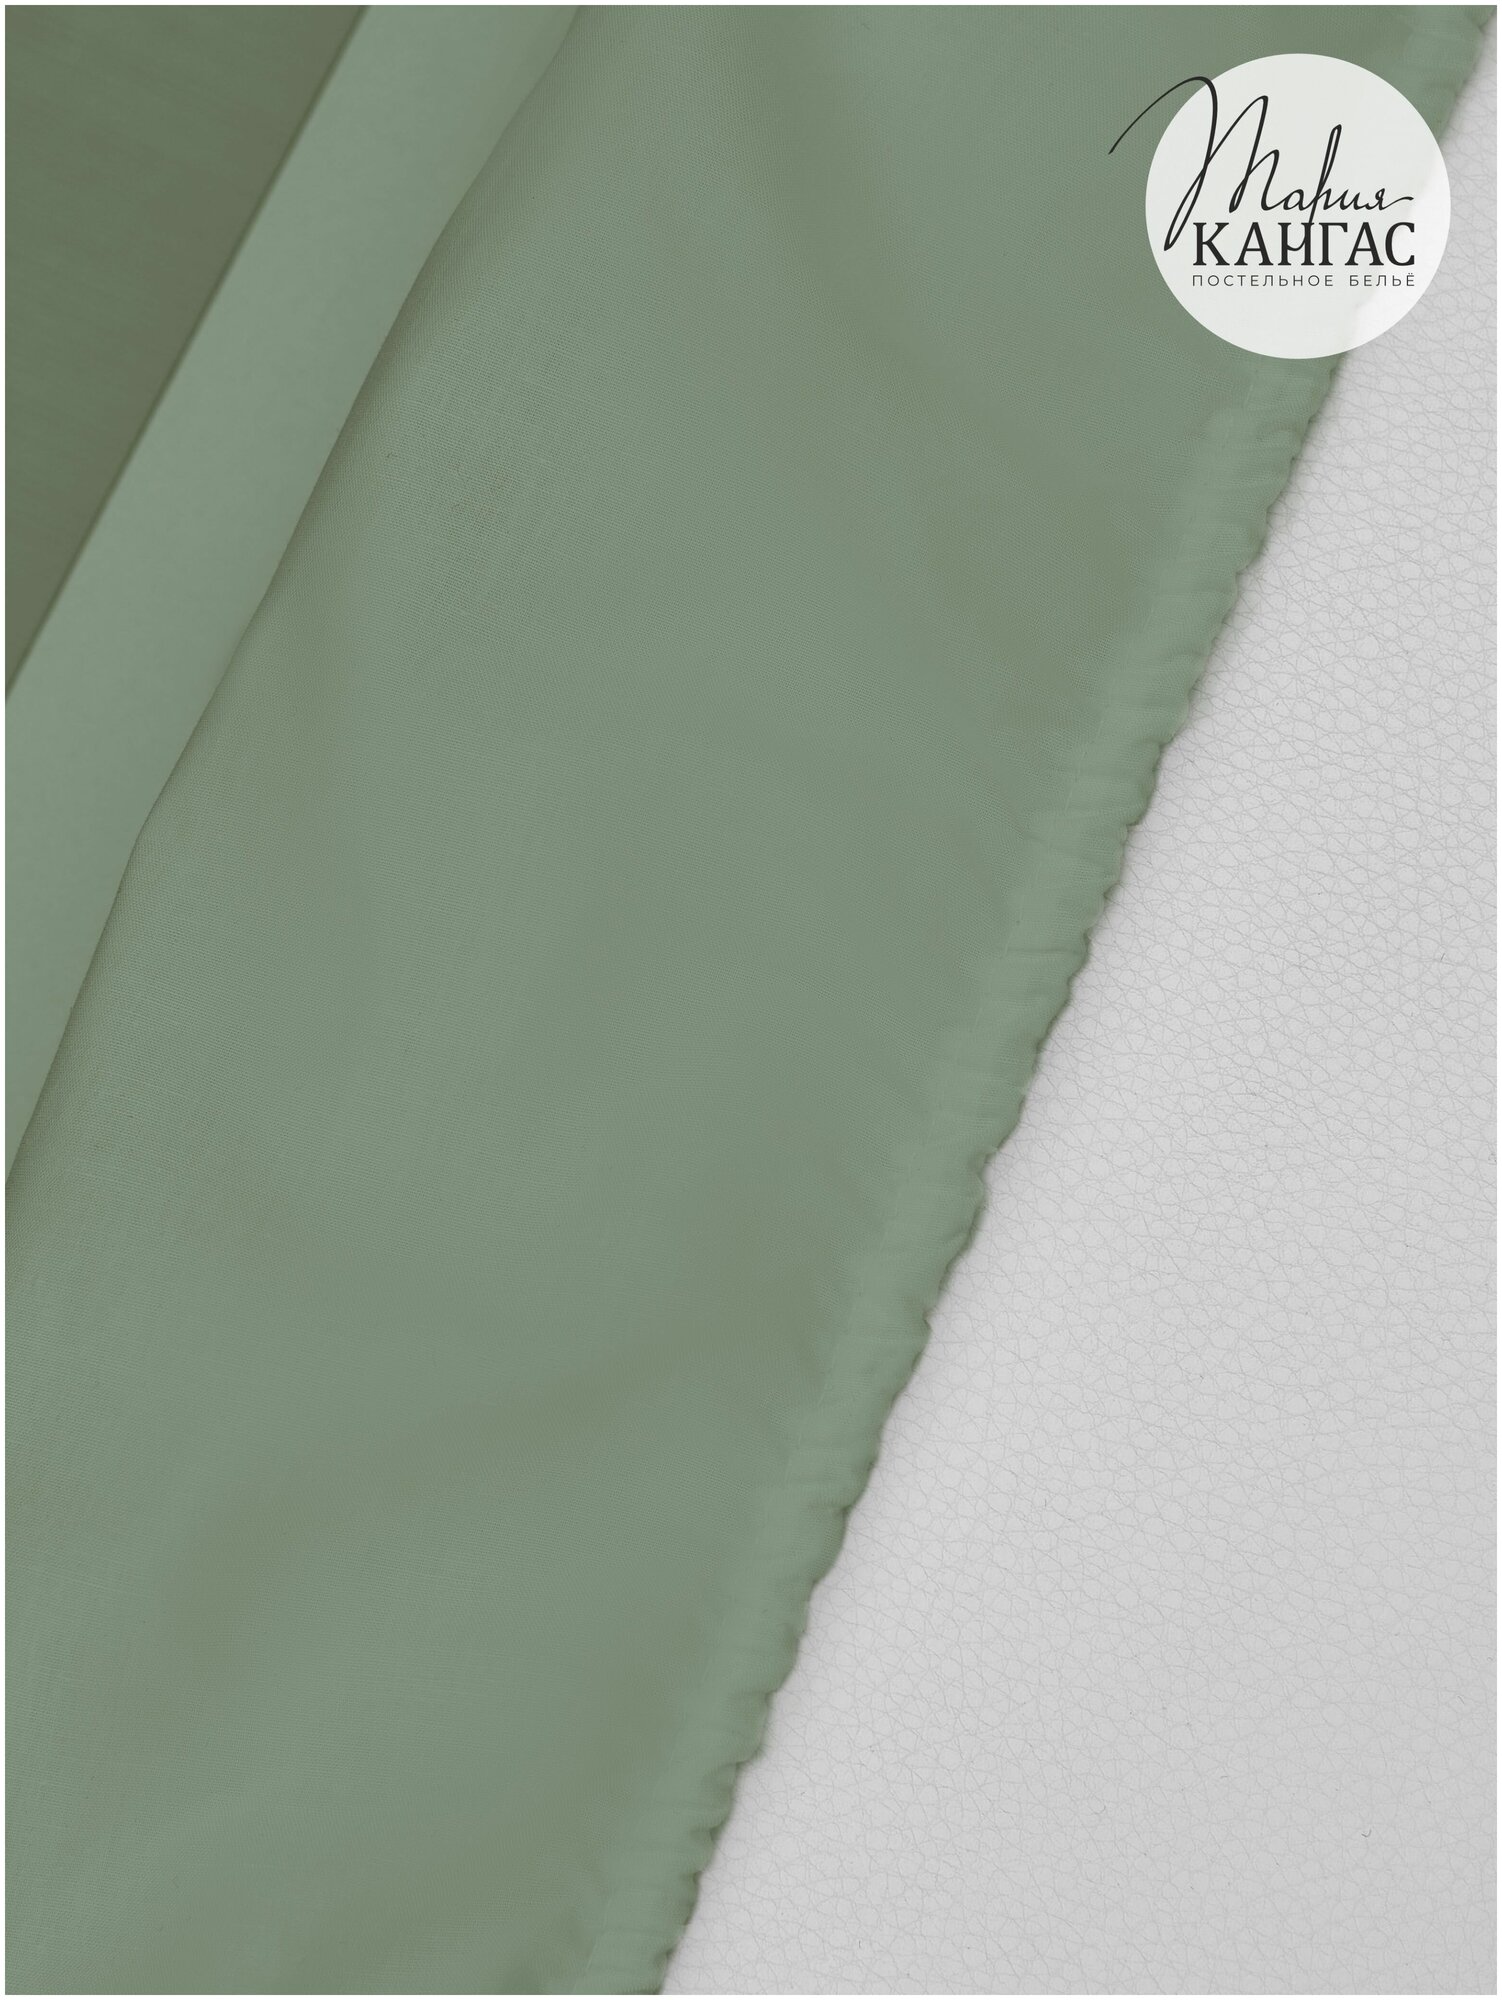 Простыня на резинке Мария Кангас Орхидея текстиль 90x200х26 хлопок лиоцелл серо-зеленая - фотография № 5